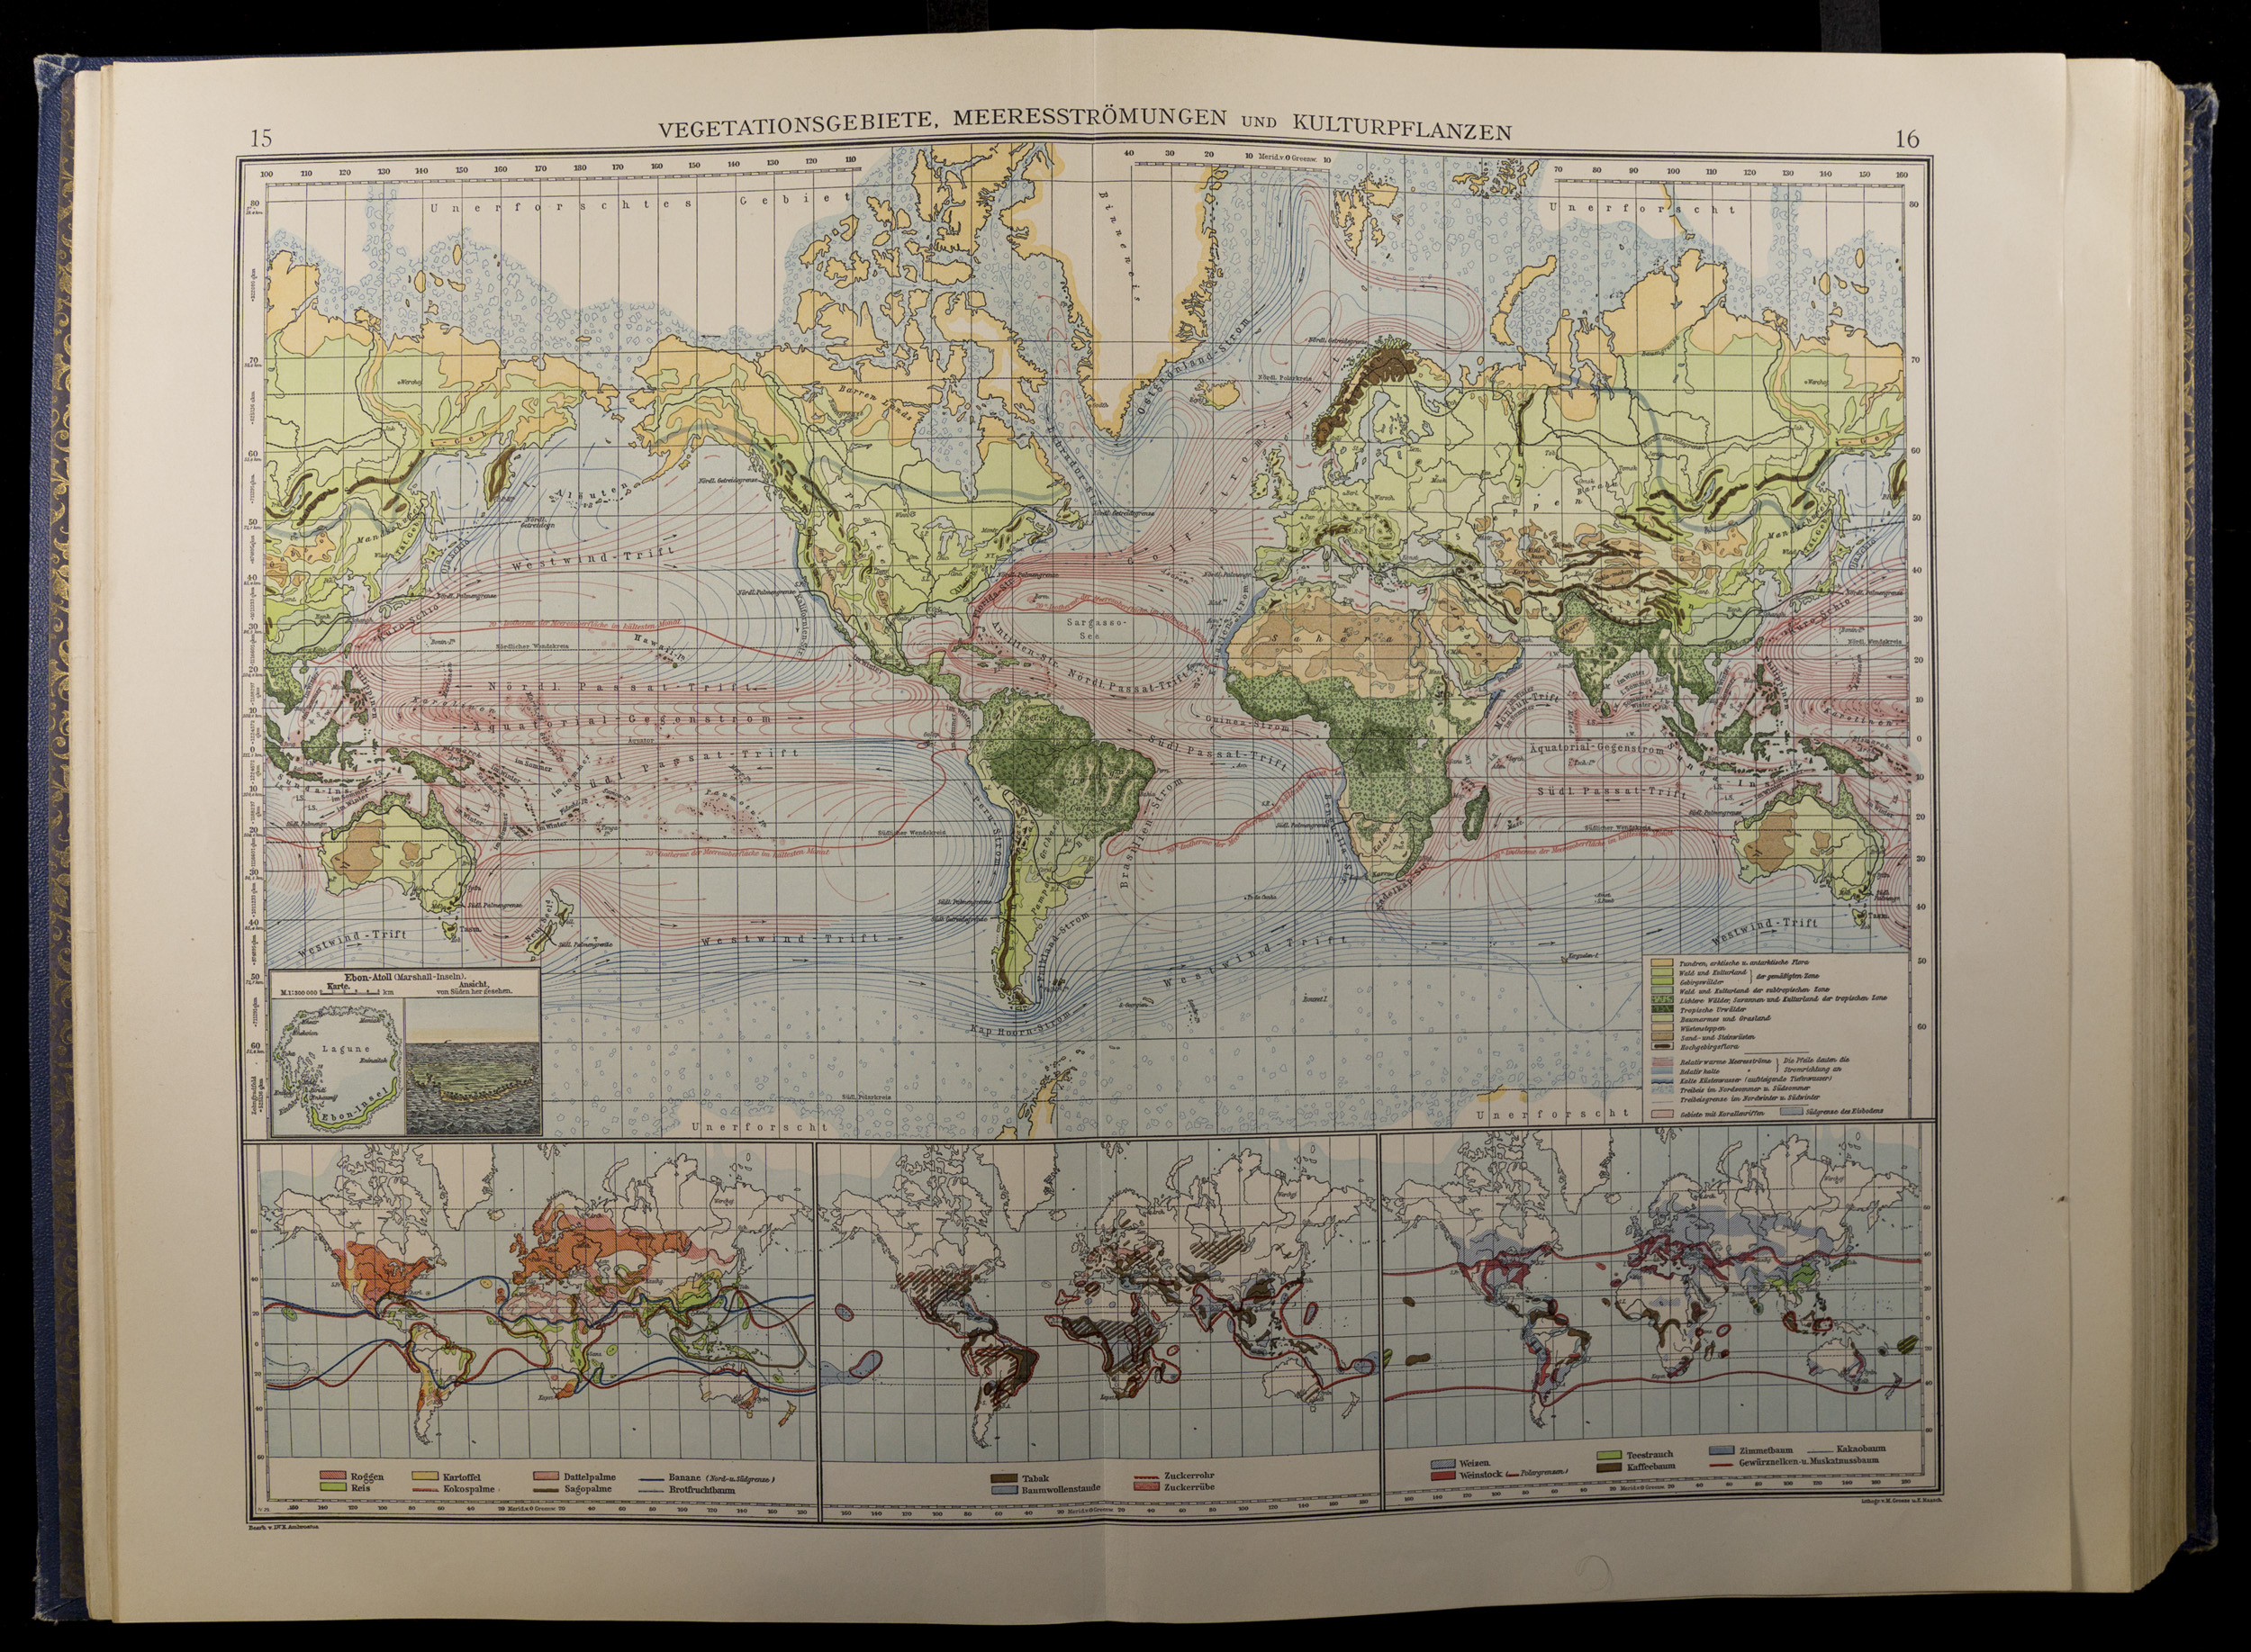 Wielobarwna mapa globu z trzema mniejszymi obrazami świata poniżej, przedstawiającymi globalne rozmieszczenie roślinności, roślin uprawnych i prądów oceanicznych.